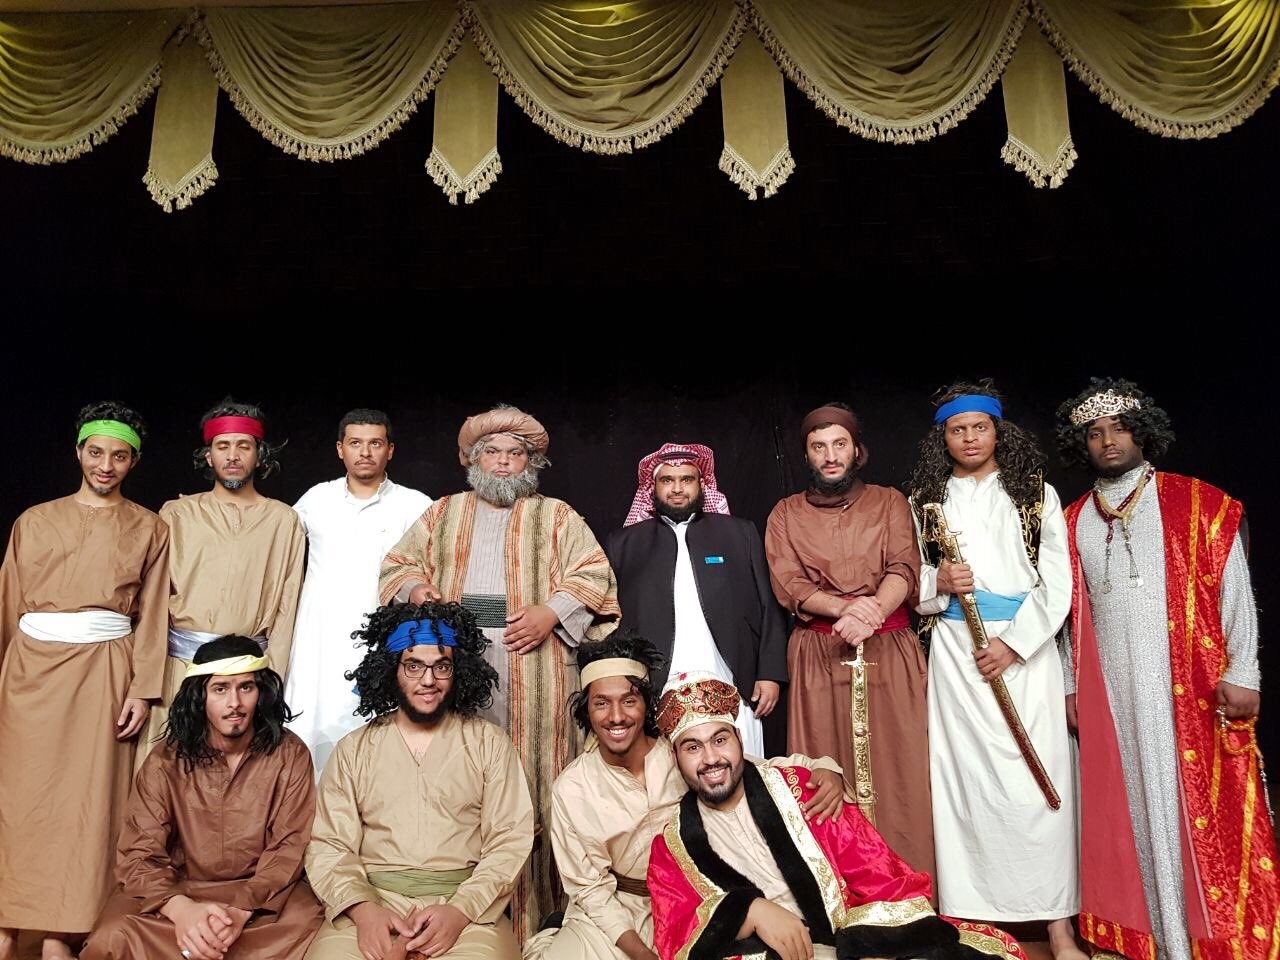 المسرح في الجامعات السعودية حاضر كنشاط طلابي لكن برامجه الأكاديمية غير شائعة (مواقع التواصل الاجتماعي) 7.jpg